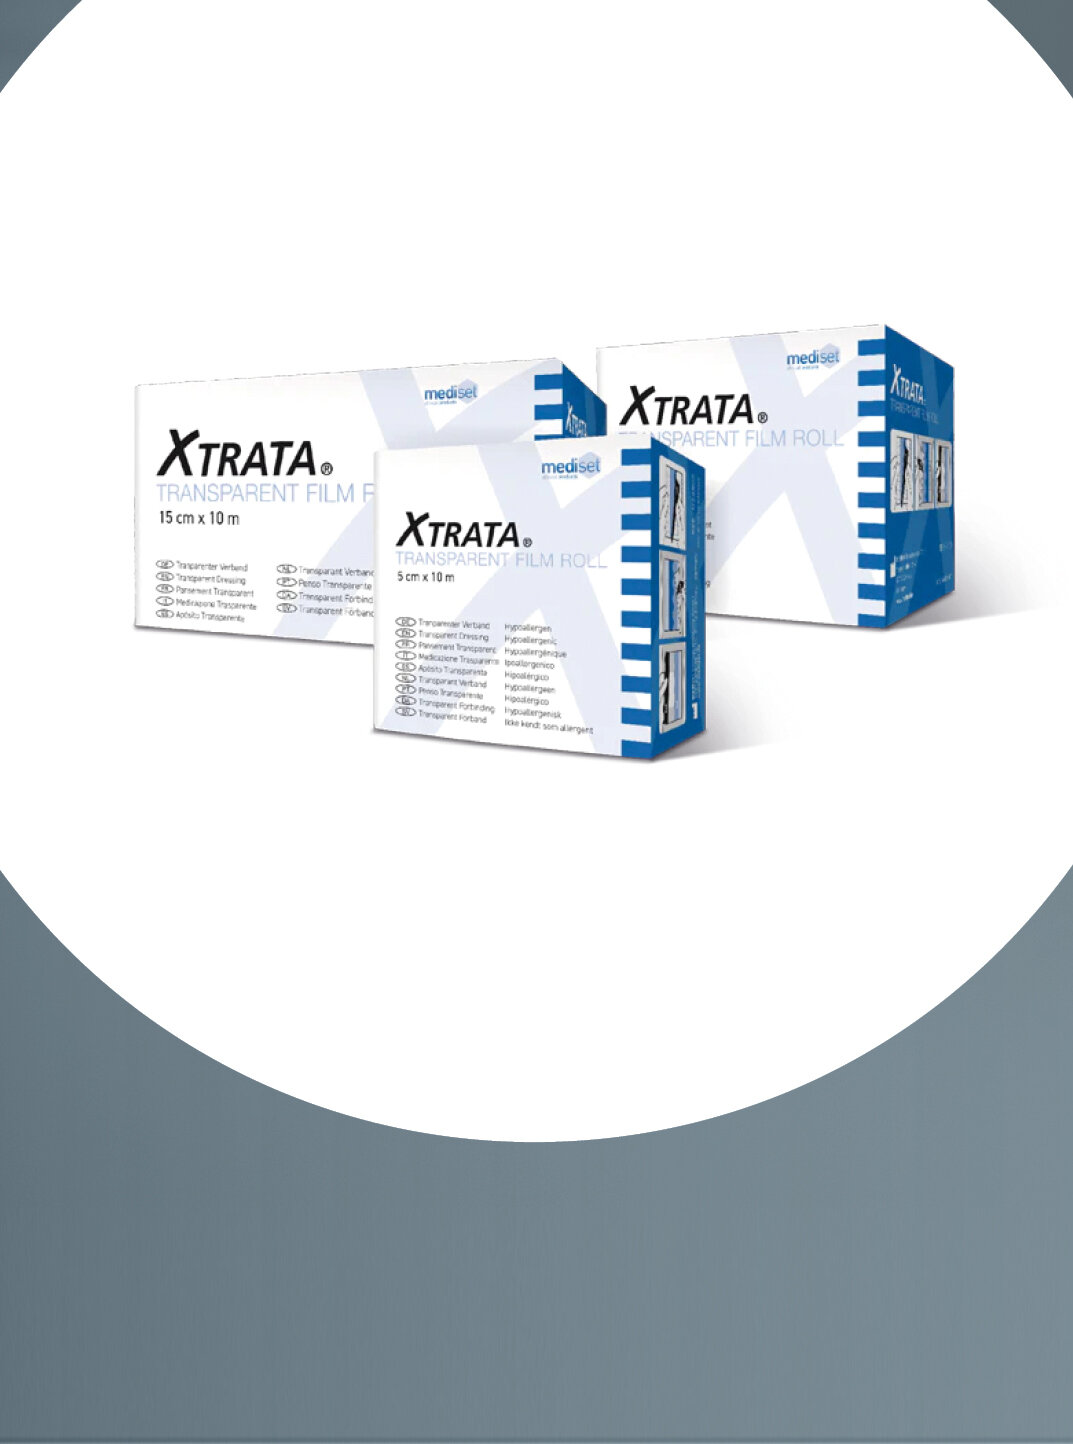 Im Fokus die drei verschiedenen Verpackungsgrößen des Produktes Xtrata® von mediset clinical products, stehend als Gruppe.